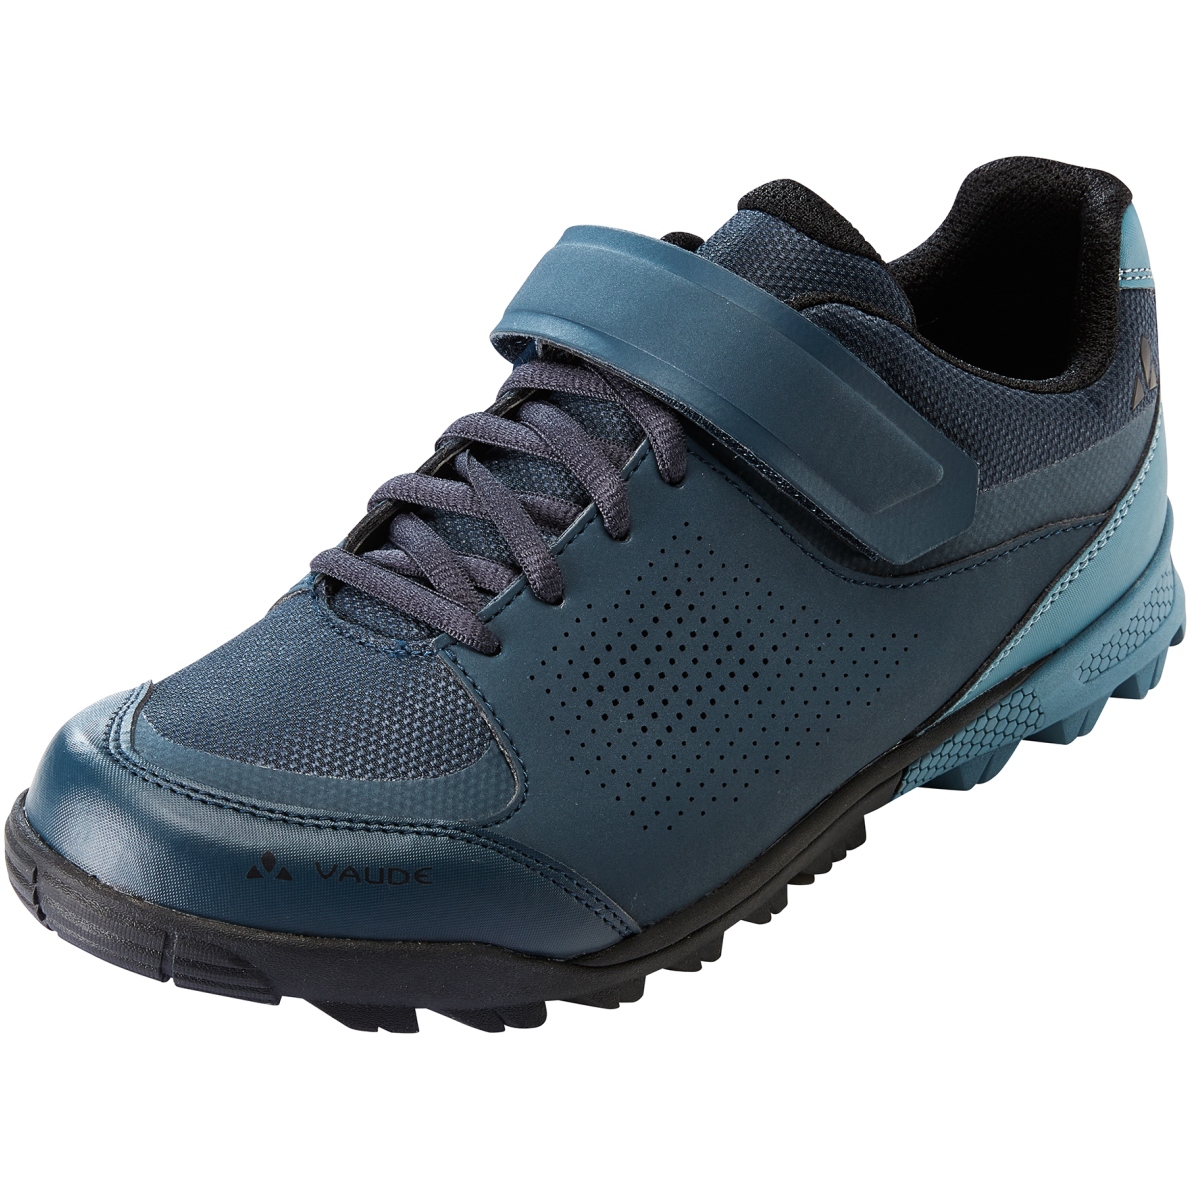 Produktbild von Vaude AM Downieville Low All-Mountain Schuhe Herren - blue grey/dark sea